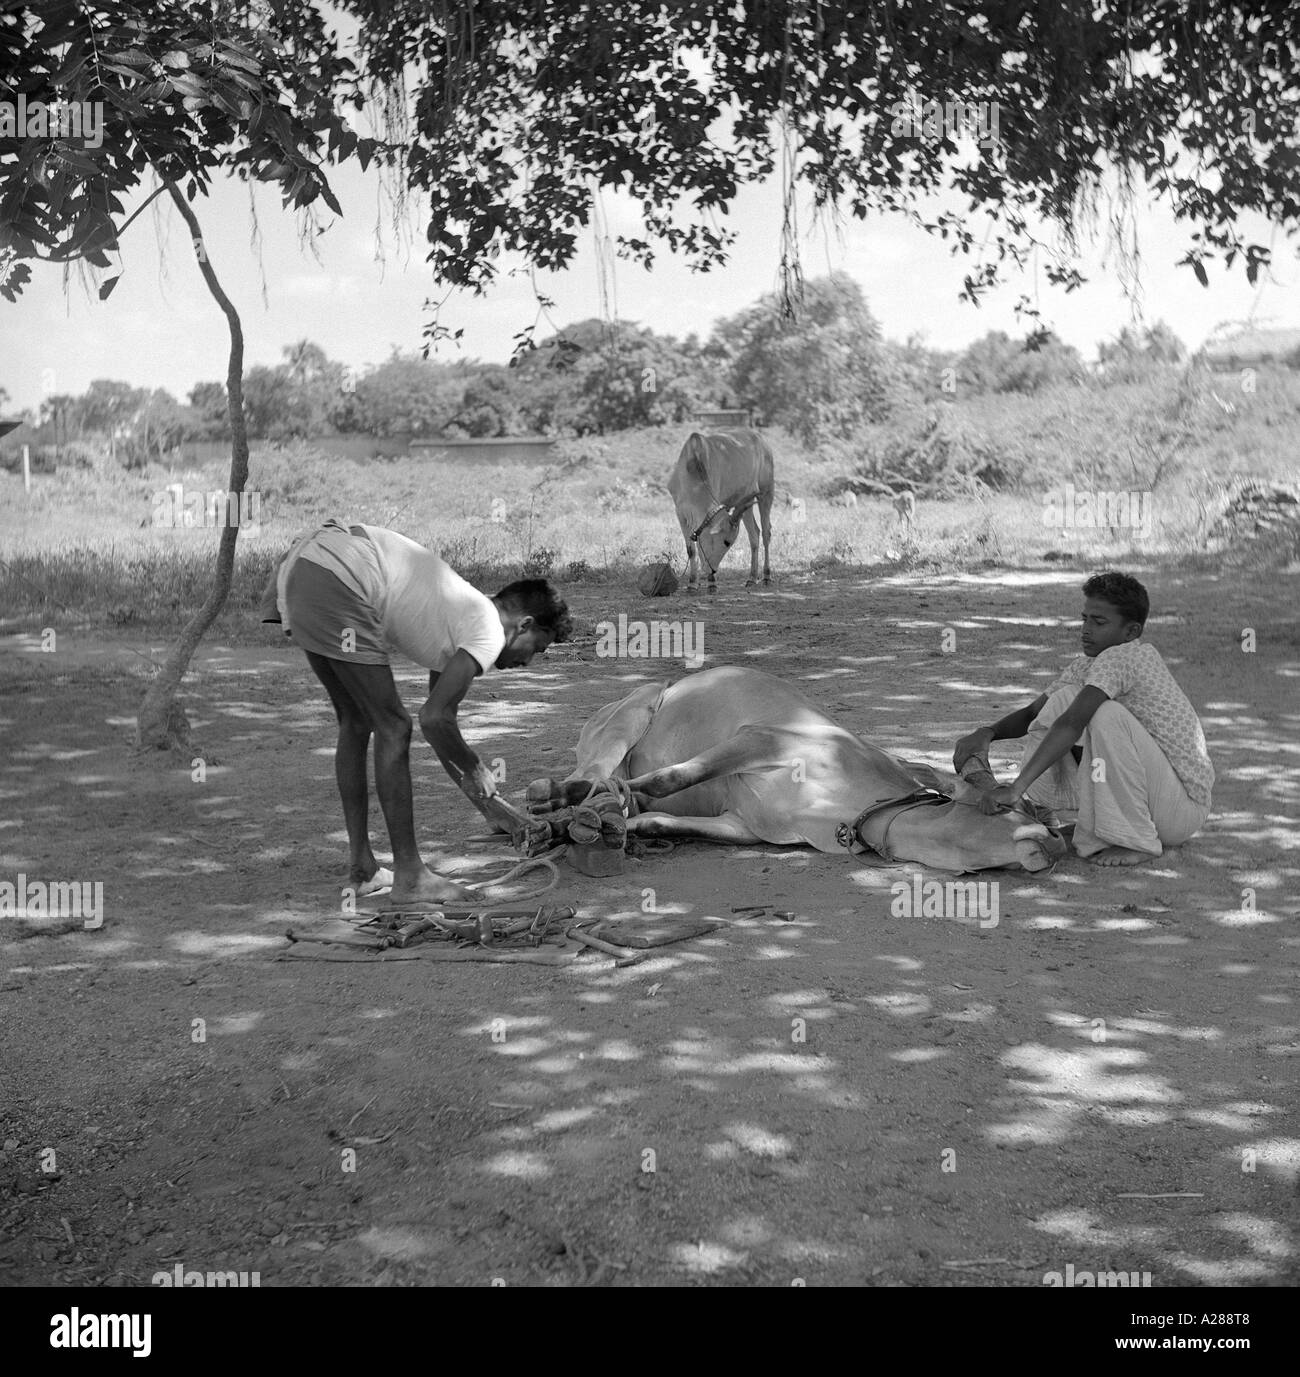 MAA76631 zwei Männer, die eine Kuh aufsetzen Beine Indien Hufe beschlagen Stockfoto